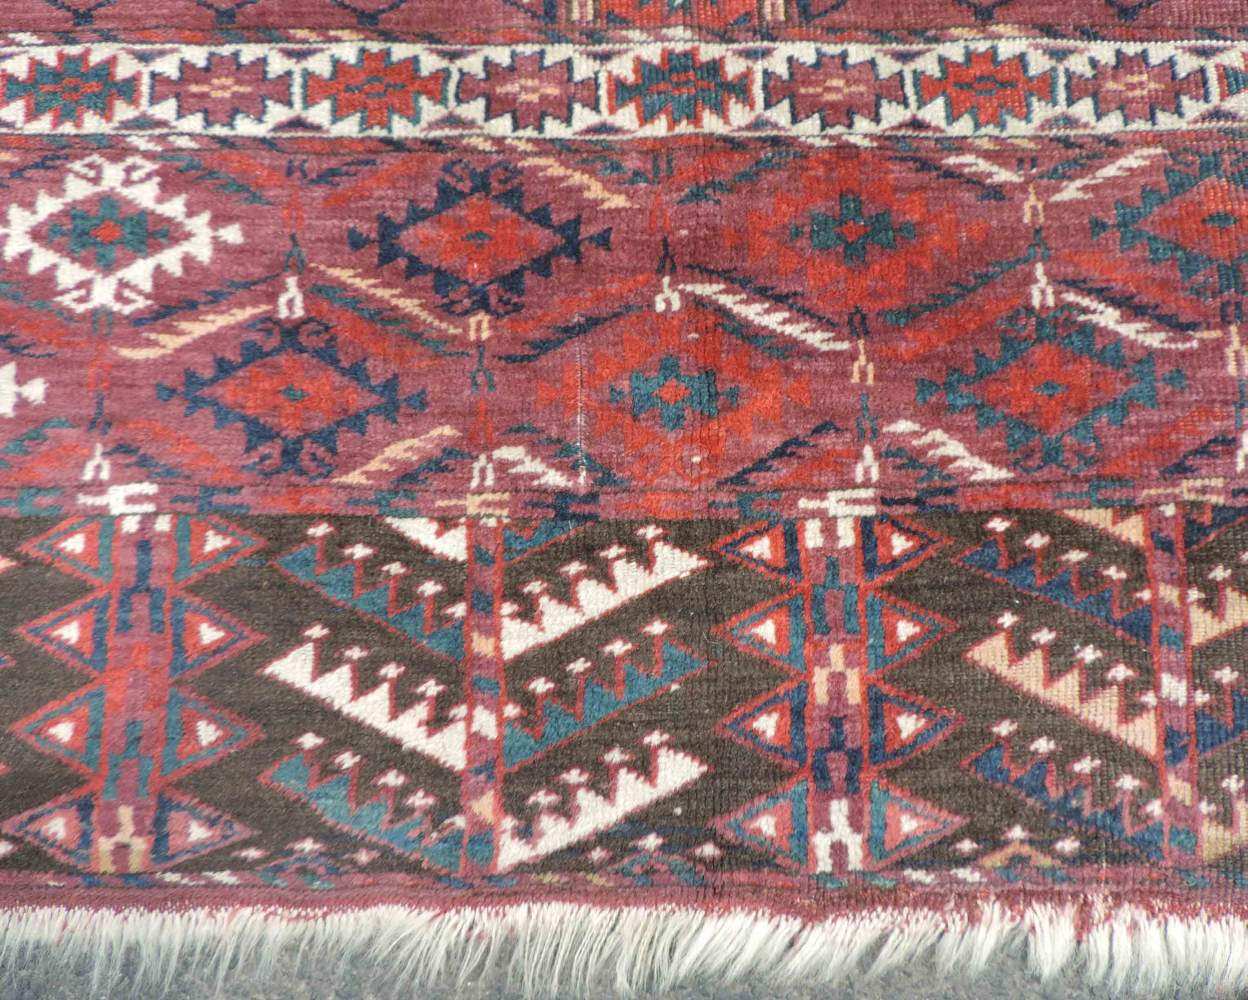 Jomud Engsi, Eingangsteppich der Turkmenen, Turkmenistan. Antik, um 1870. 165 cm x 137 cm. - Image 6 of 7